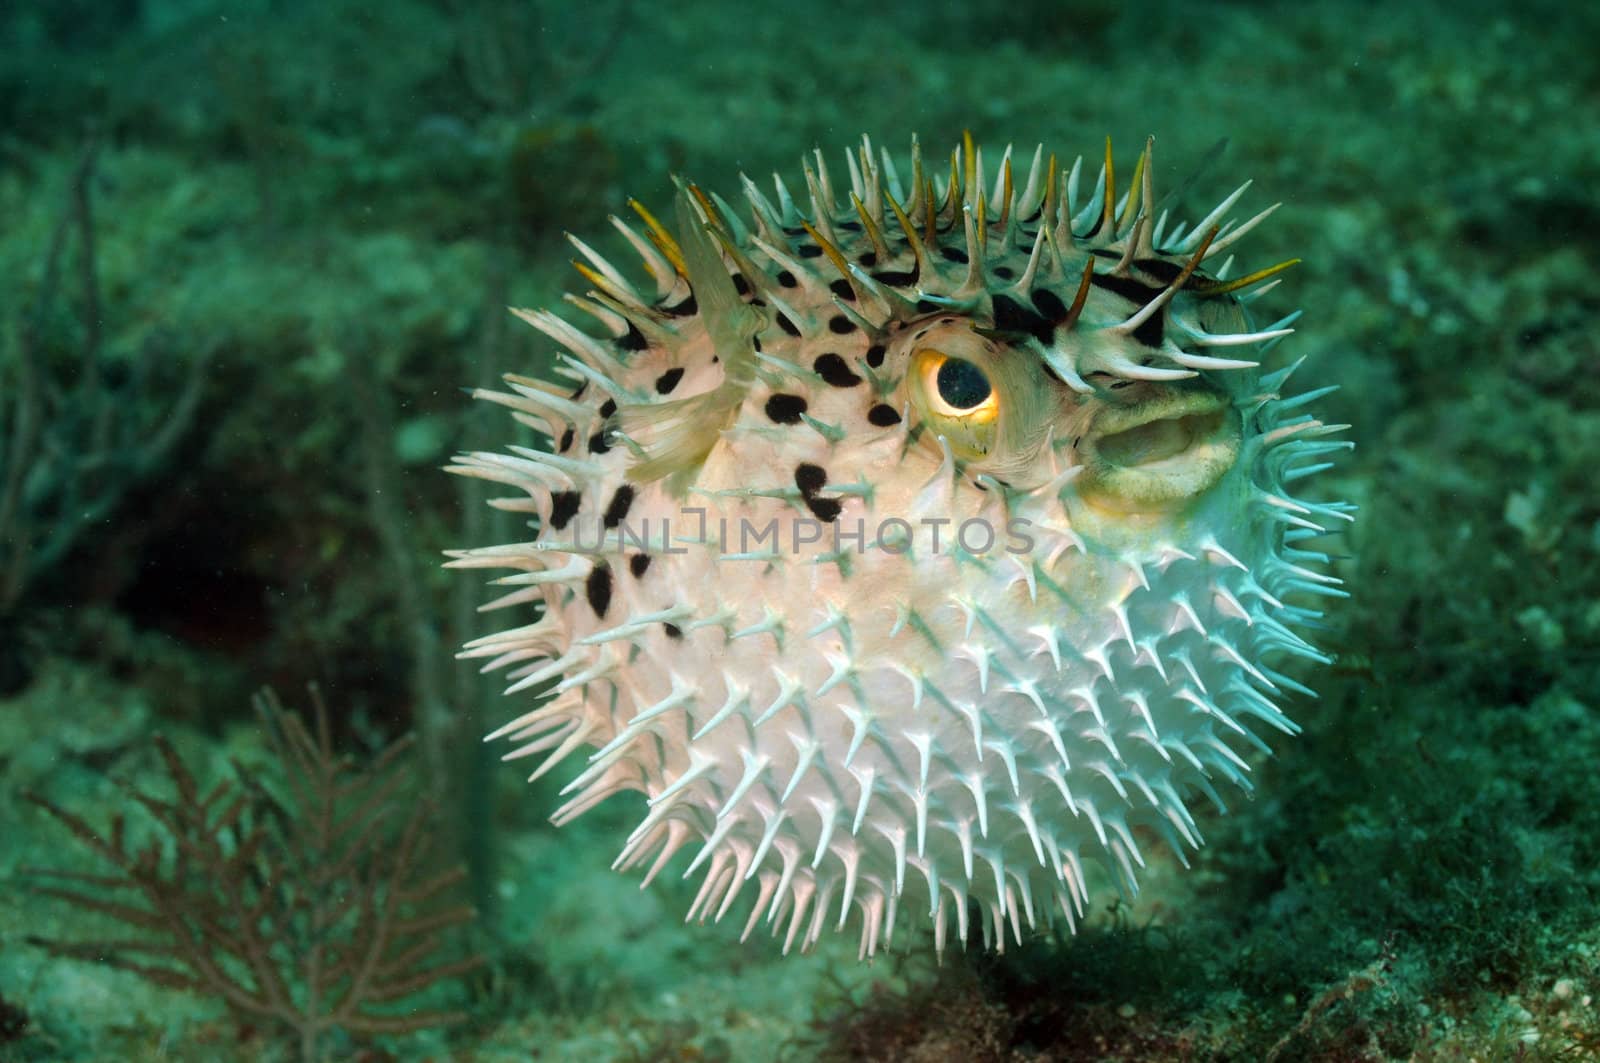 Blowfish or puffer fish in ocean by ftlaudgirl